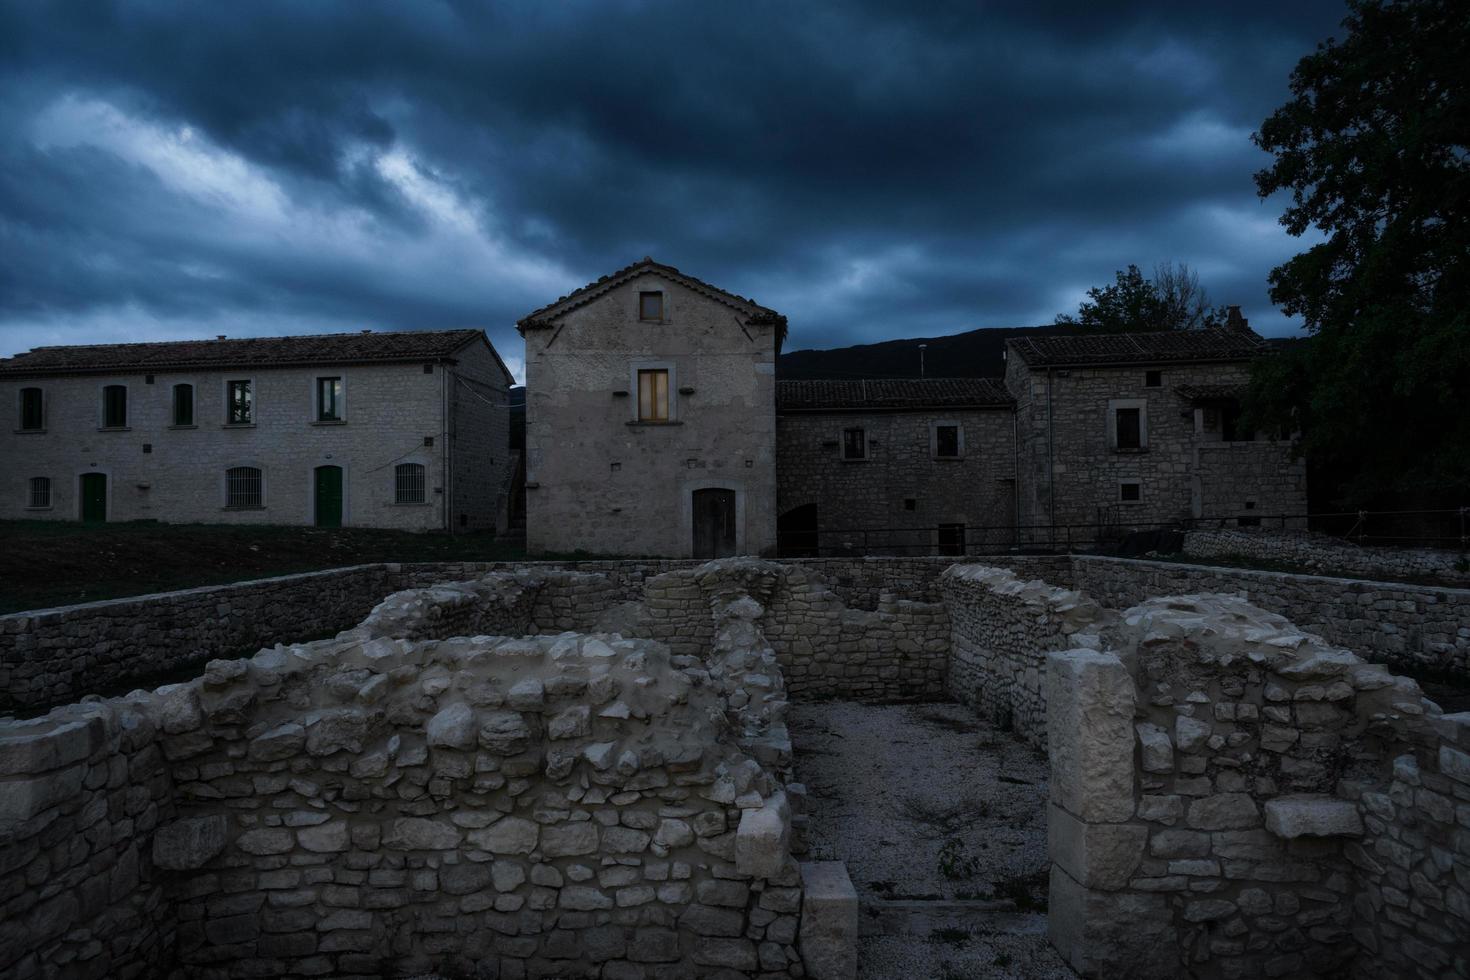 ruínas antigas no sítio arqueológico de uma antiga cidade romana na Itália central, arquitetura da velha europa abandonada em uma noite escura e sombria com um céu nublado foto